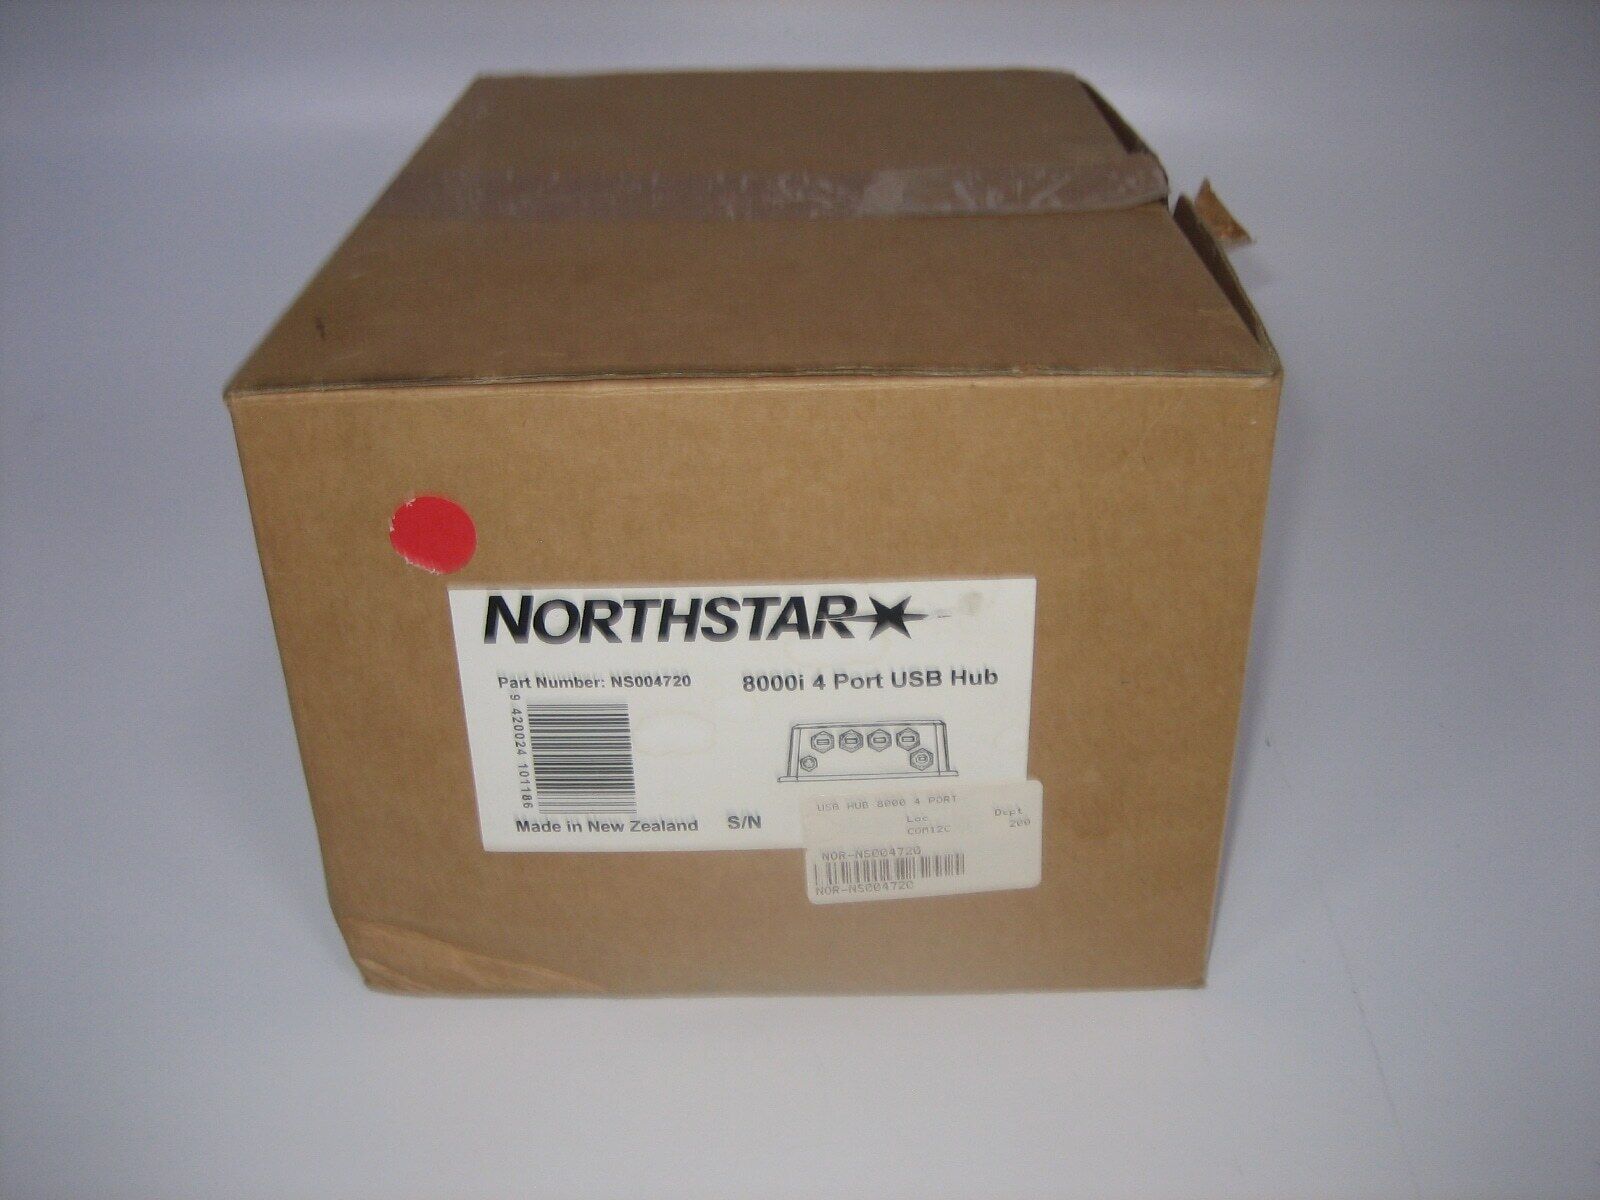 NORTHSTAR 8000i 4 PORT USB HUB - In Original Box w/Accessories